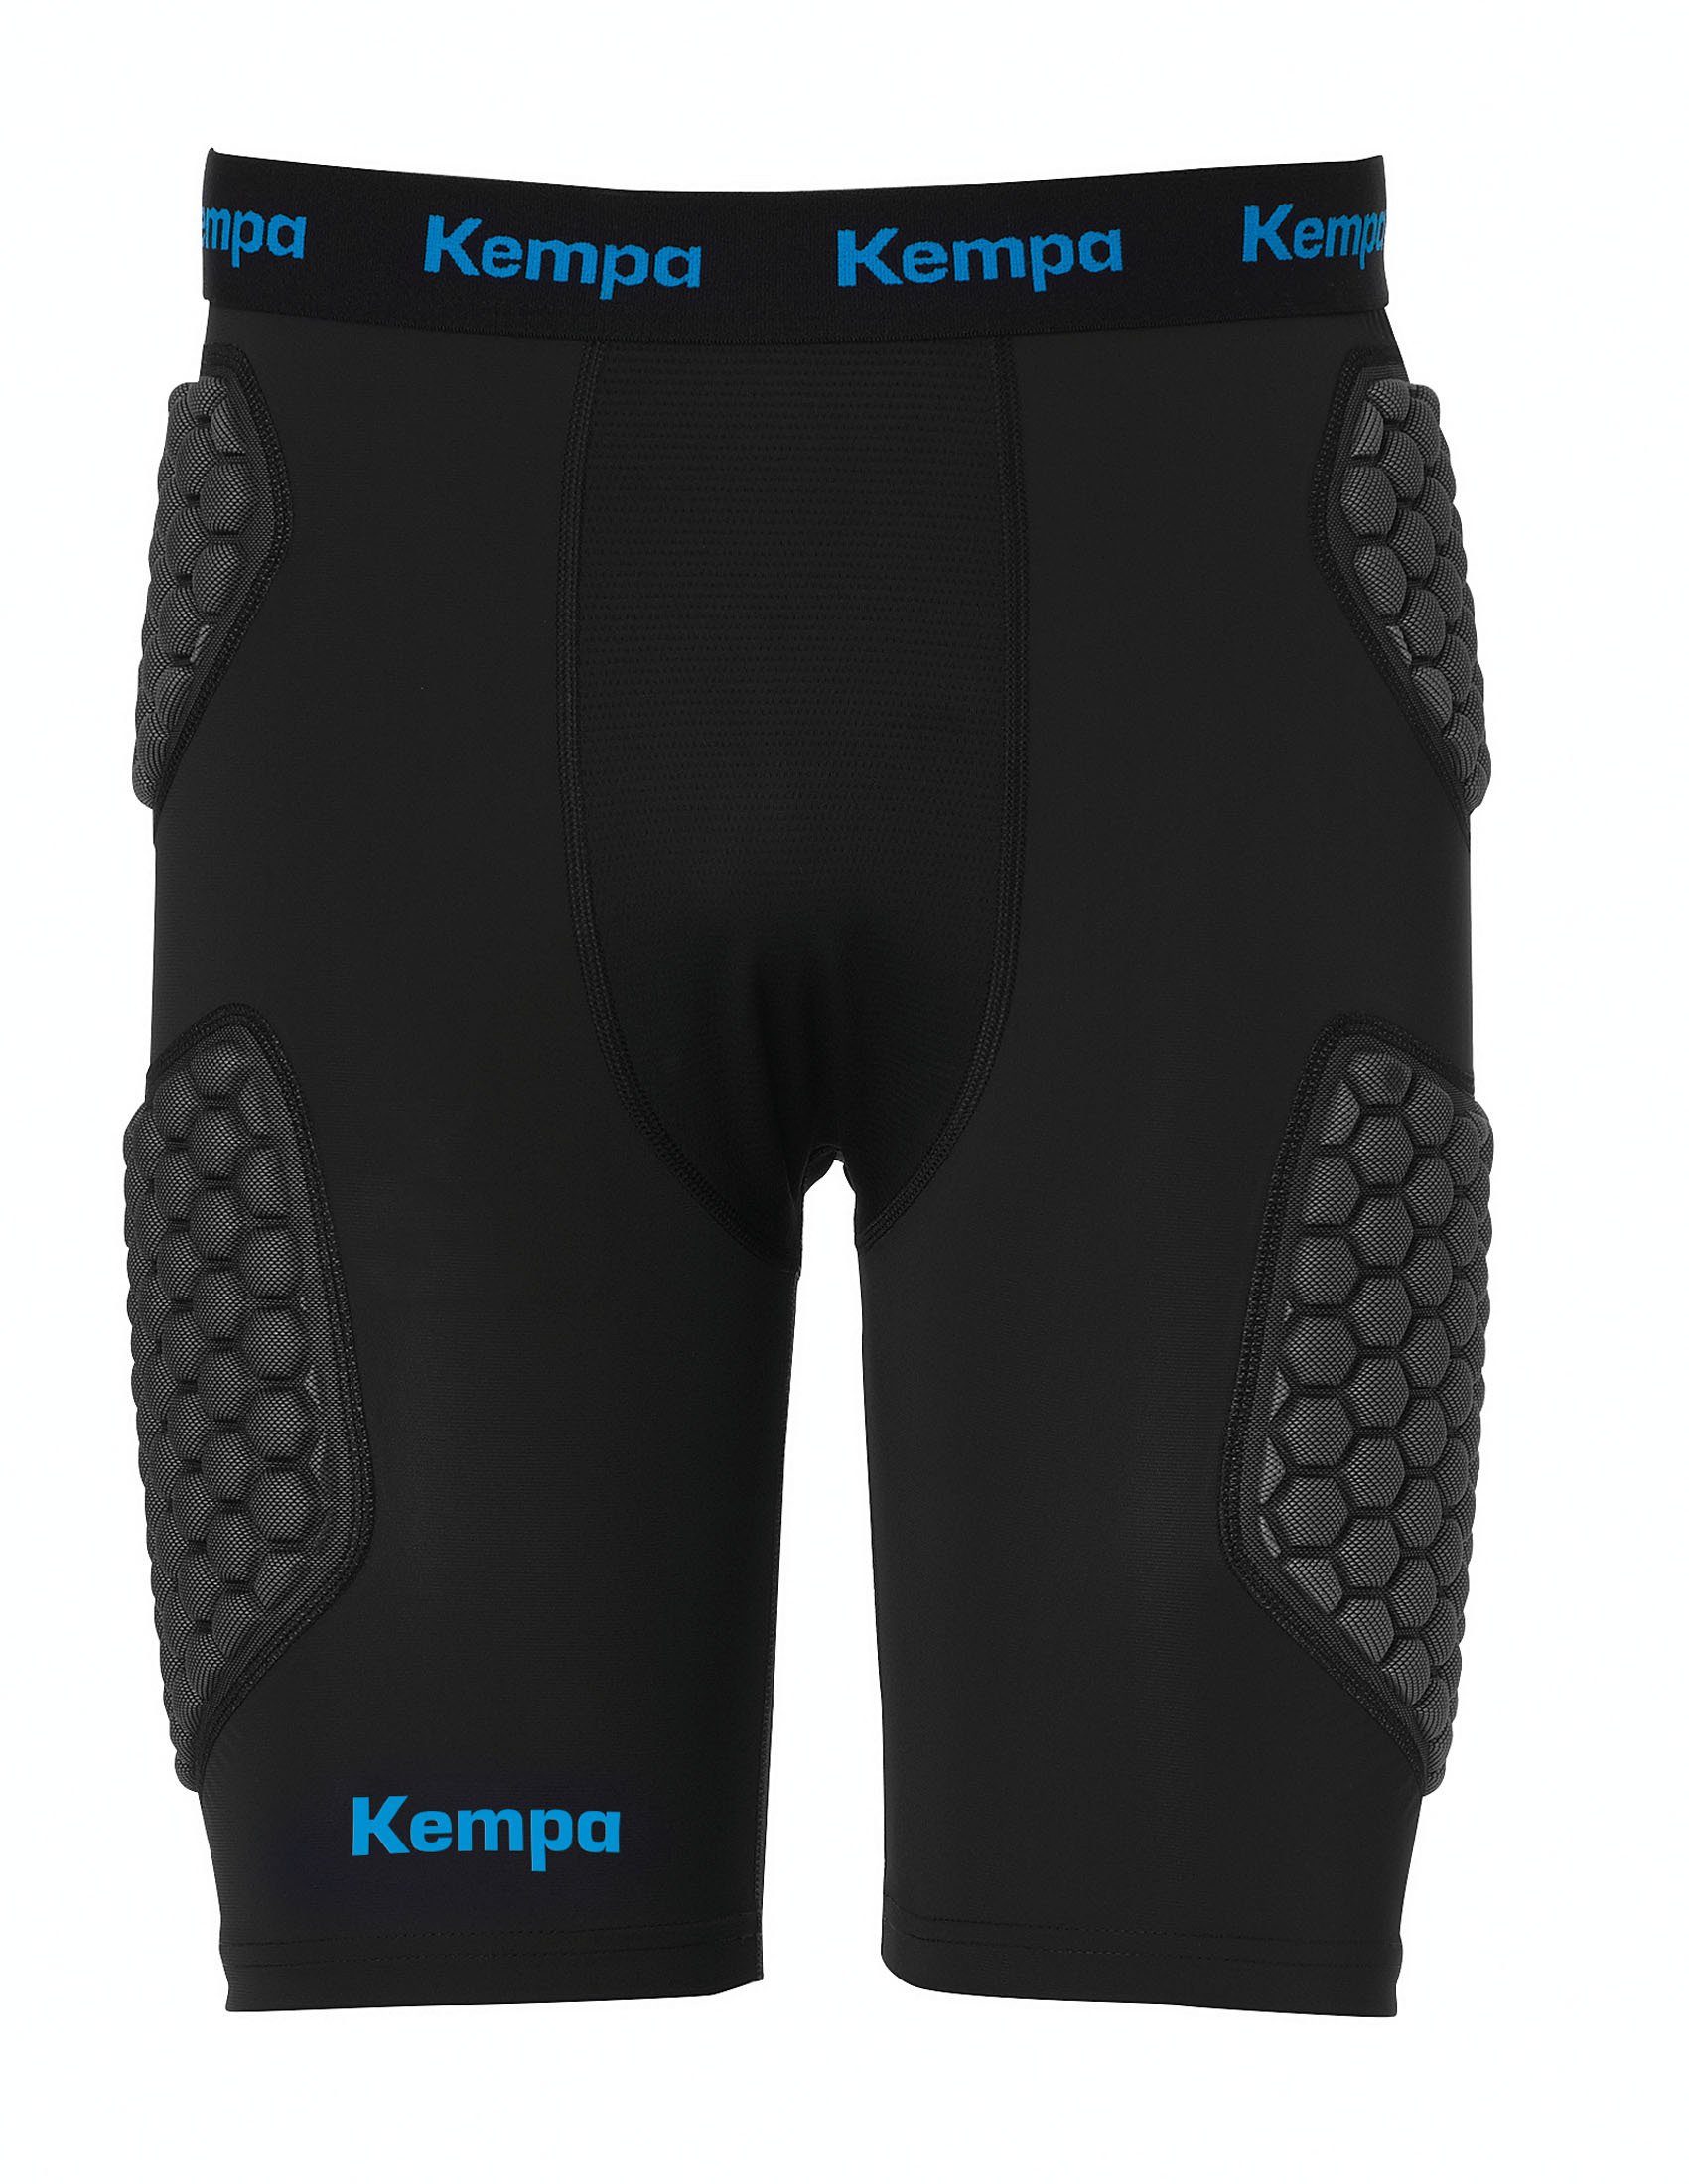 Kempa Protektorenshorts Protection Shorts PROTECTION SHORTS, elastisch